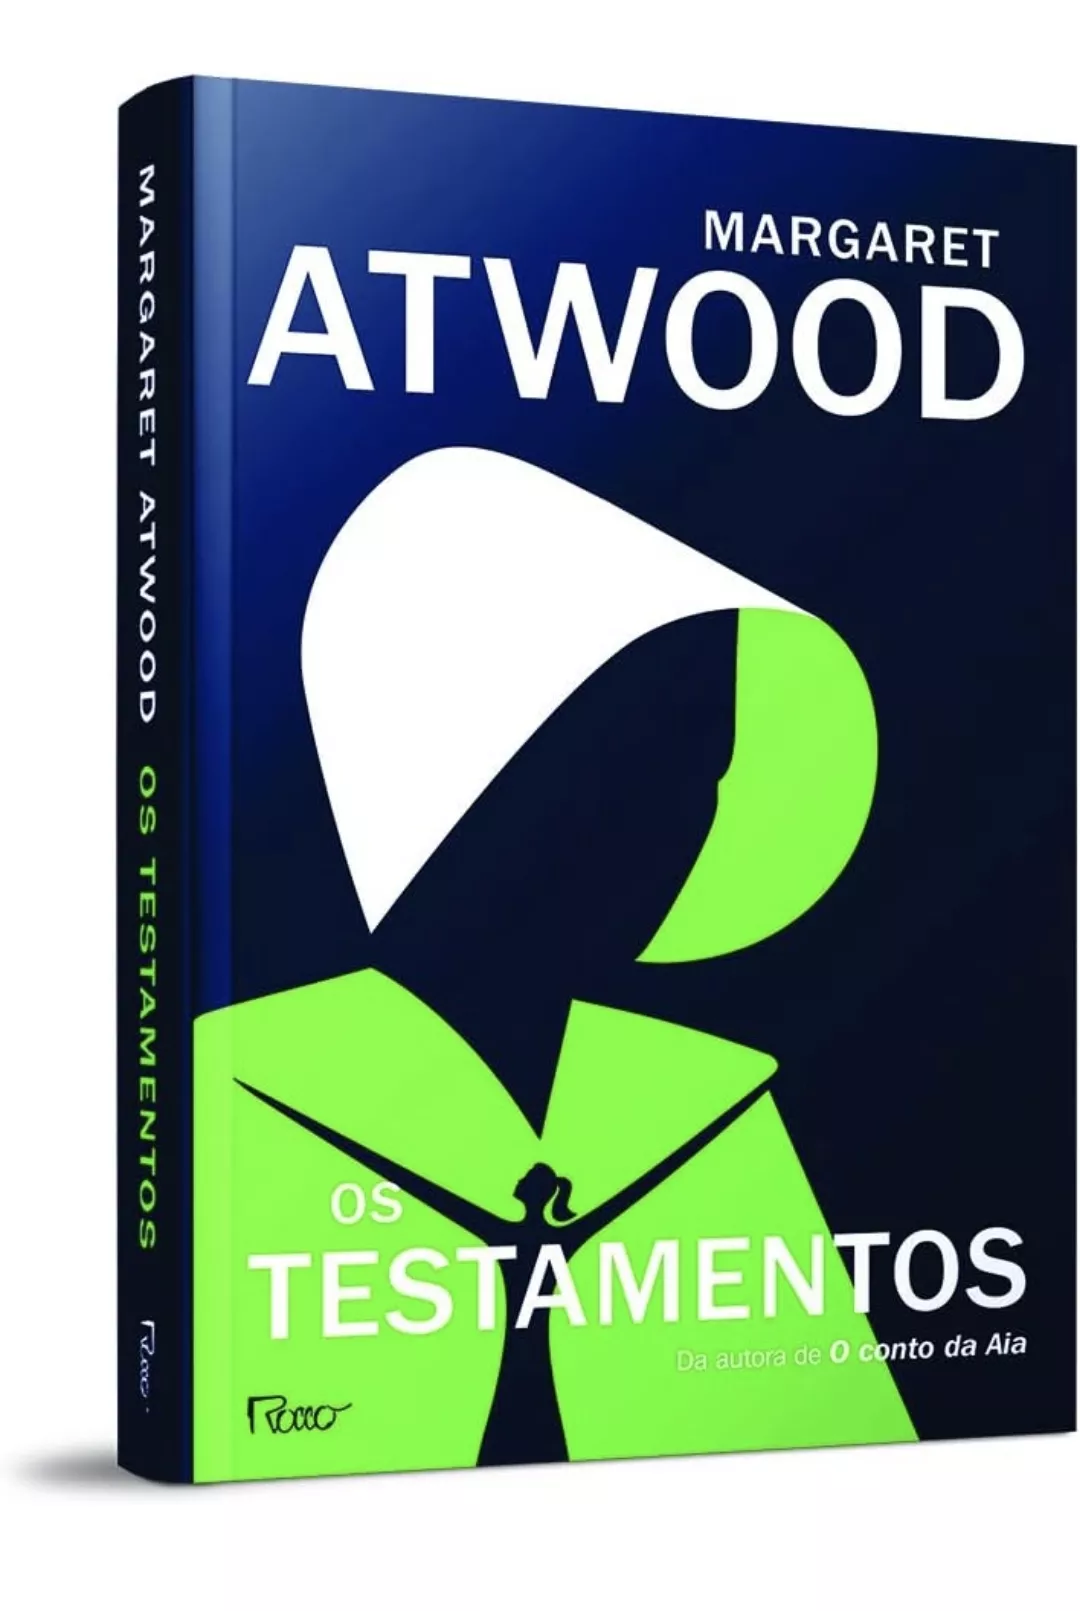 Livro Os Testamentos, Margaret Atwood - Capa Comum